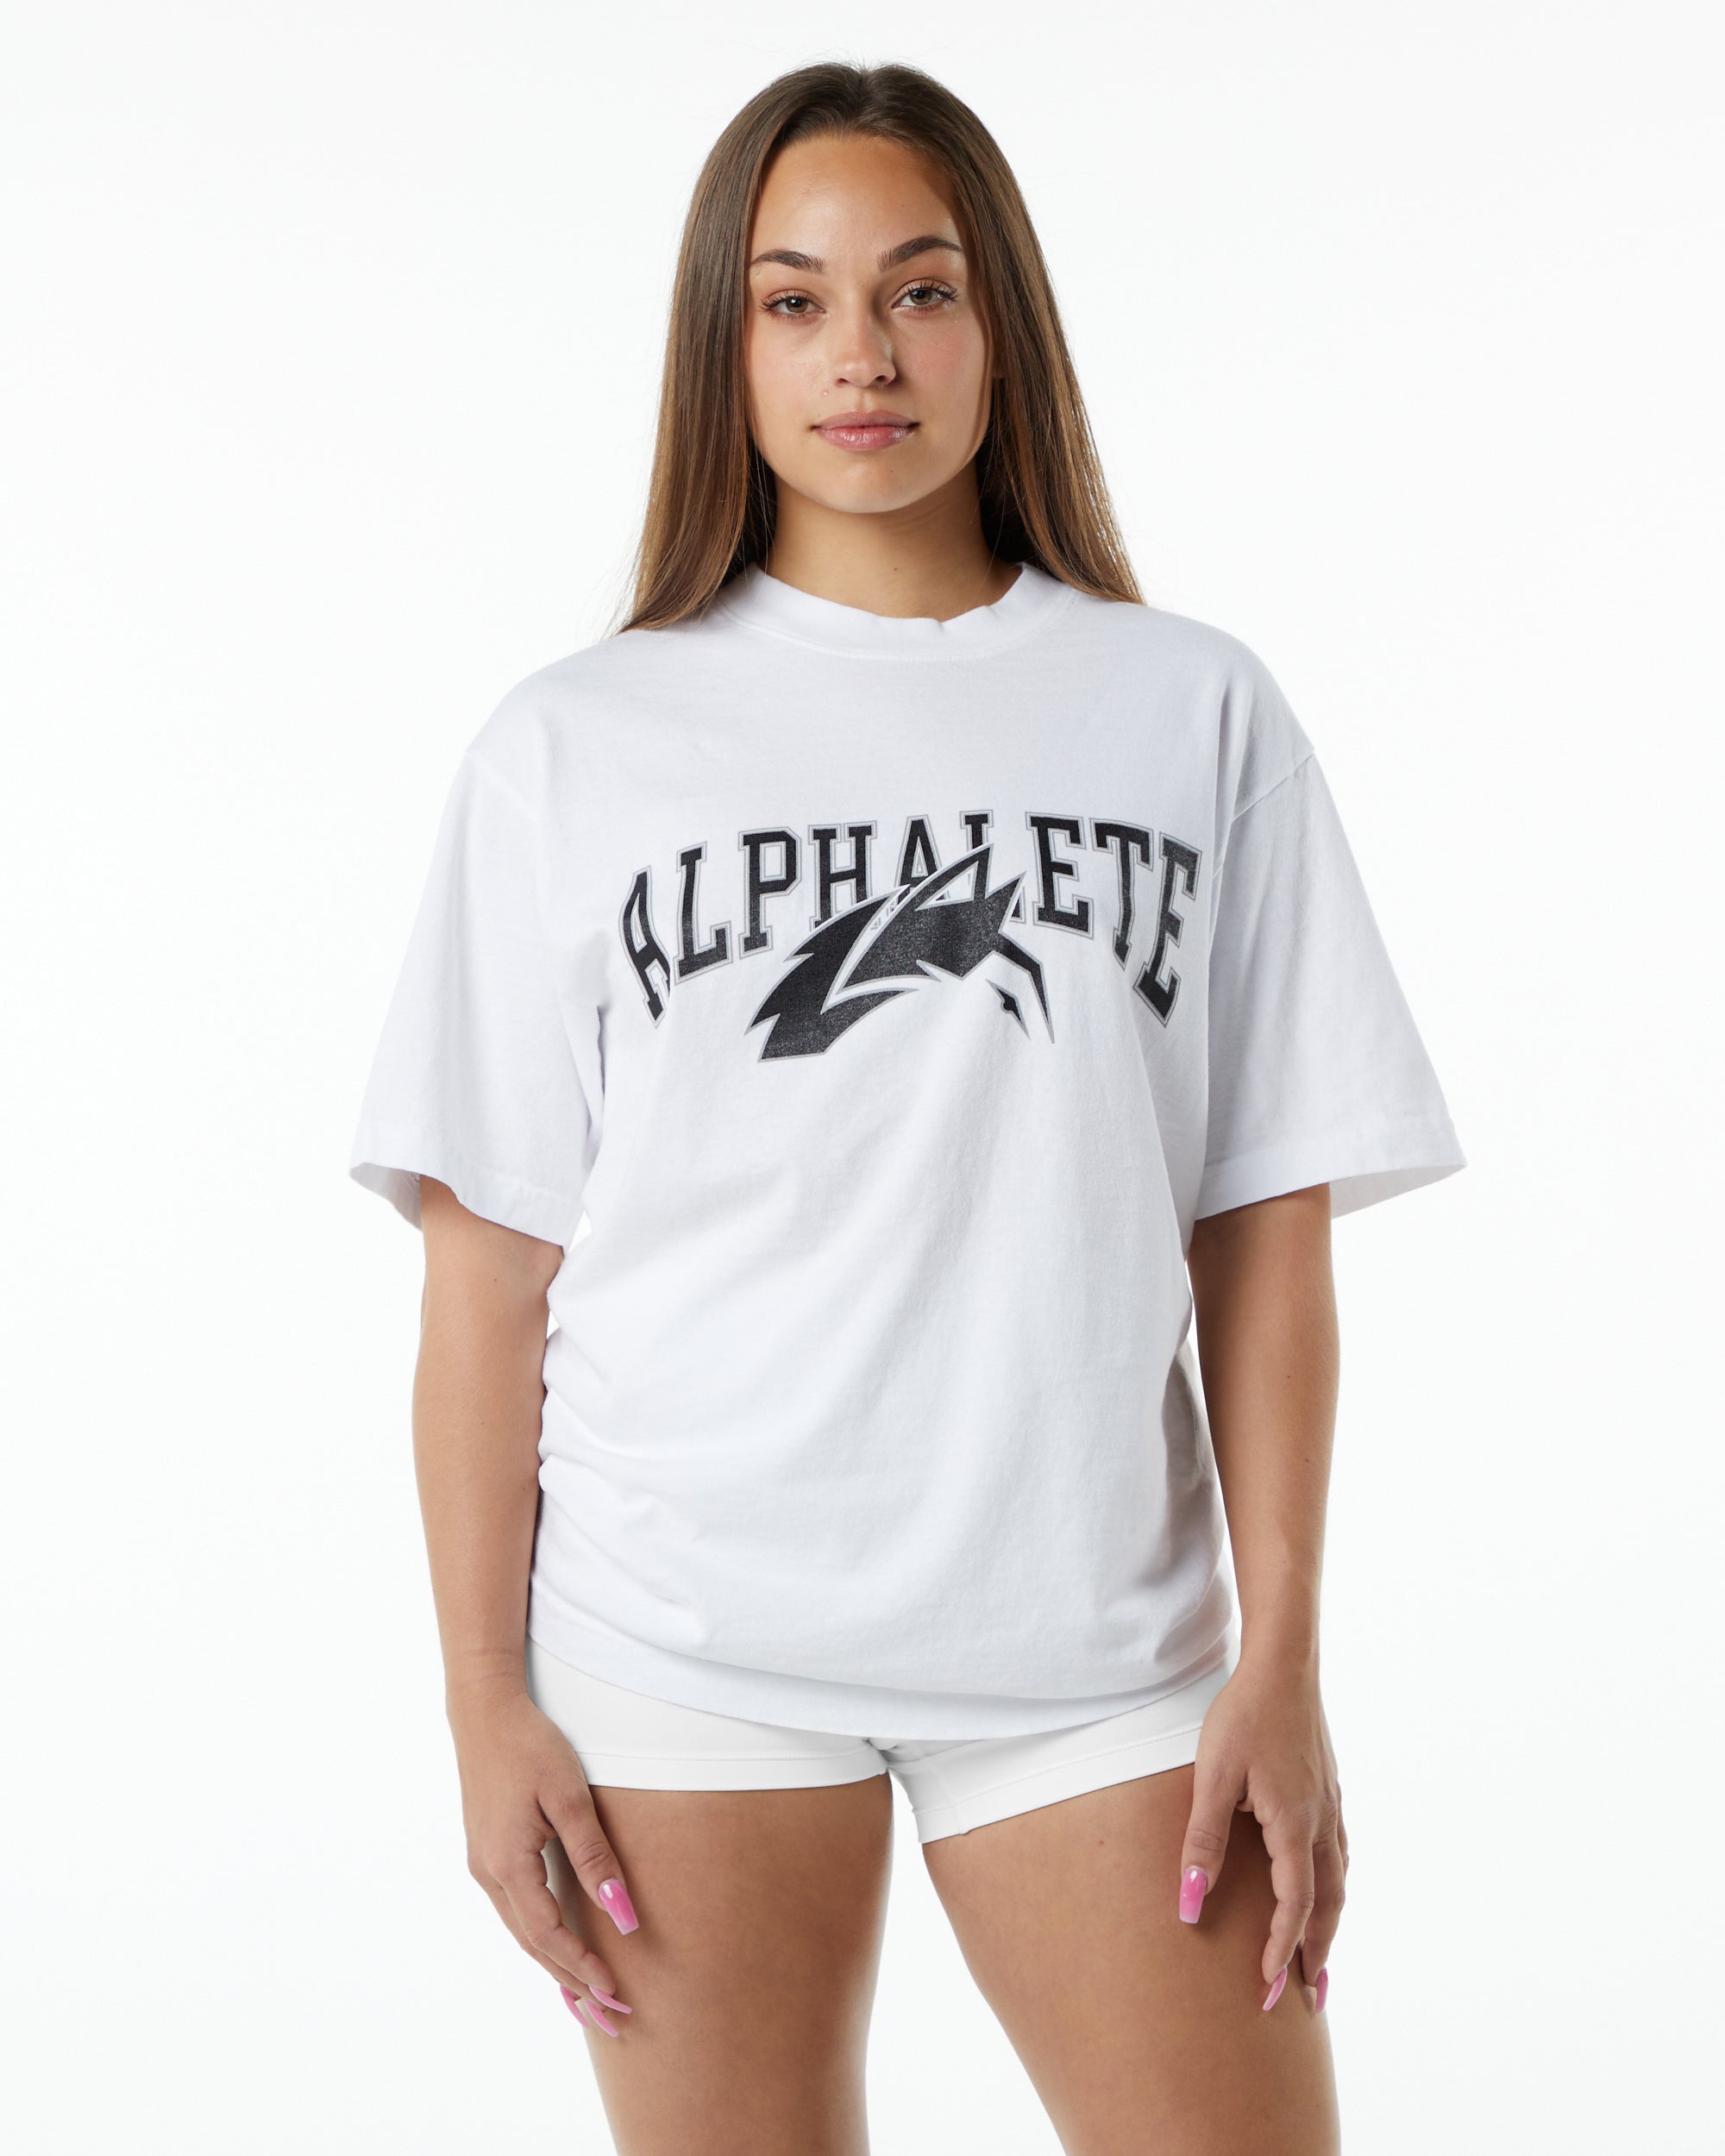 Oblečení Alphalete Nejlevnější - Alphalete Online Shop Cz